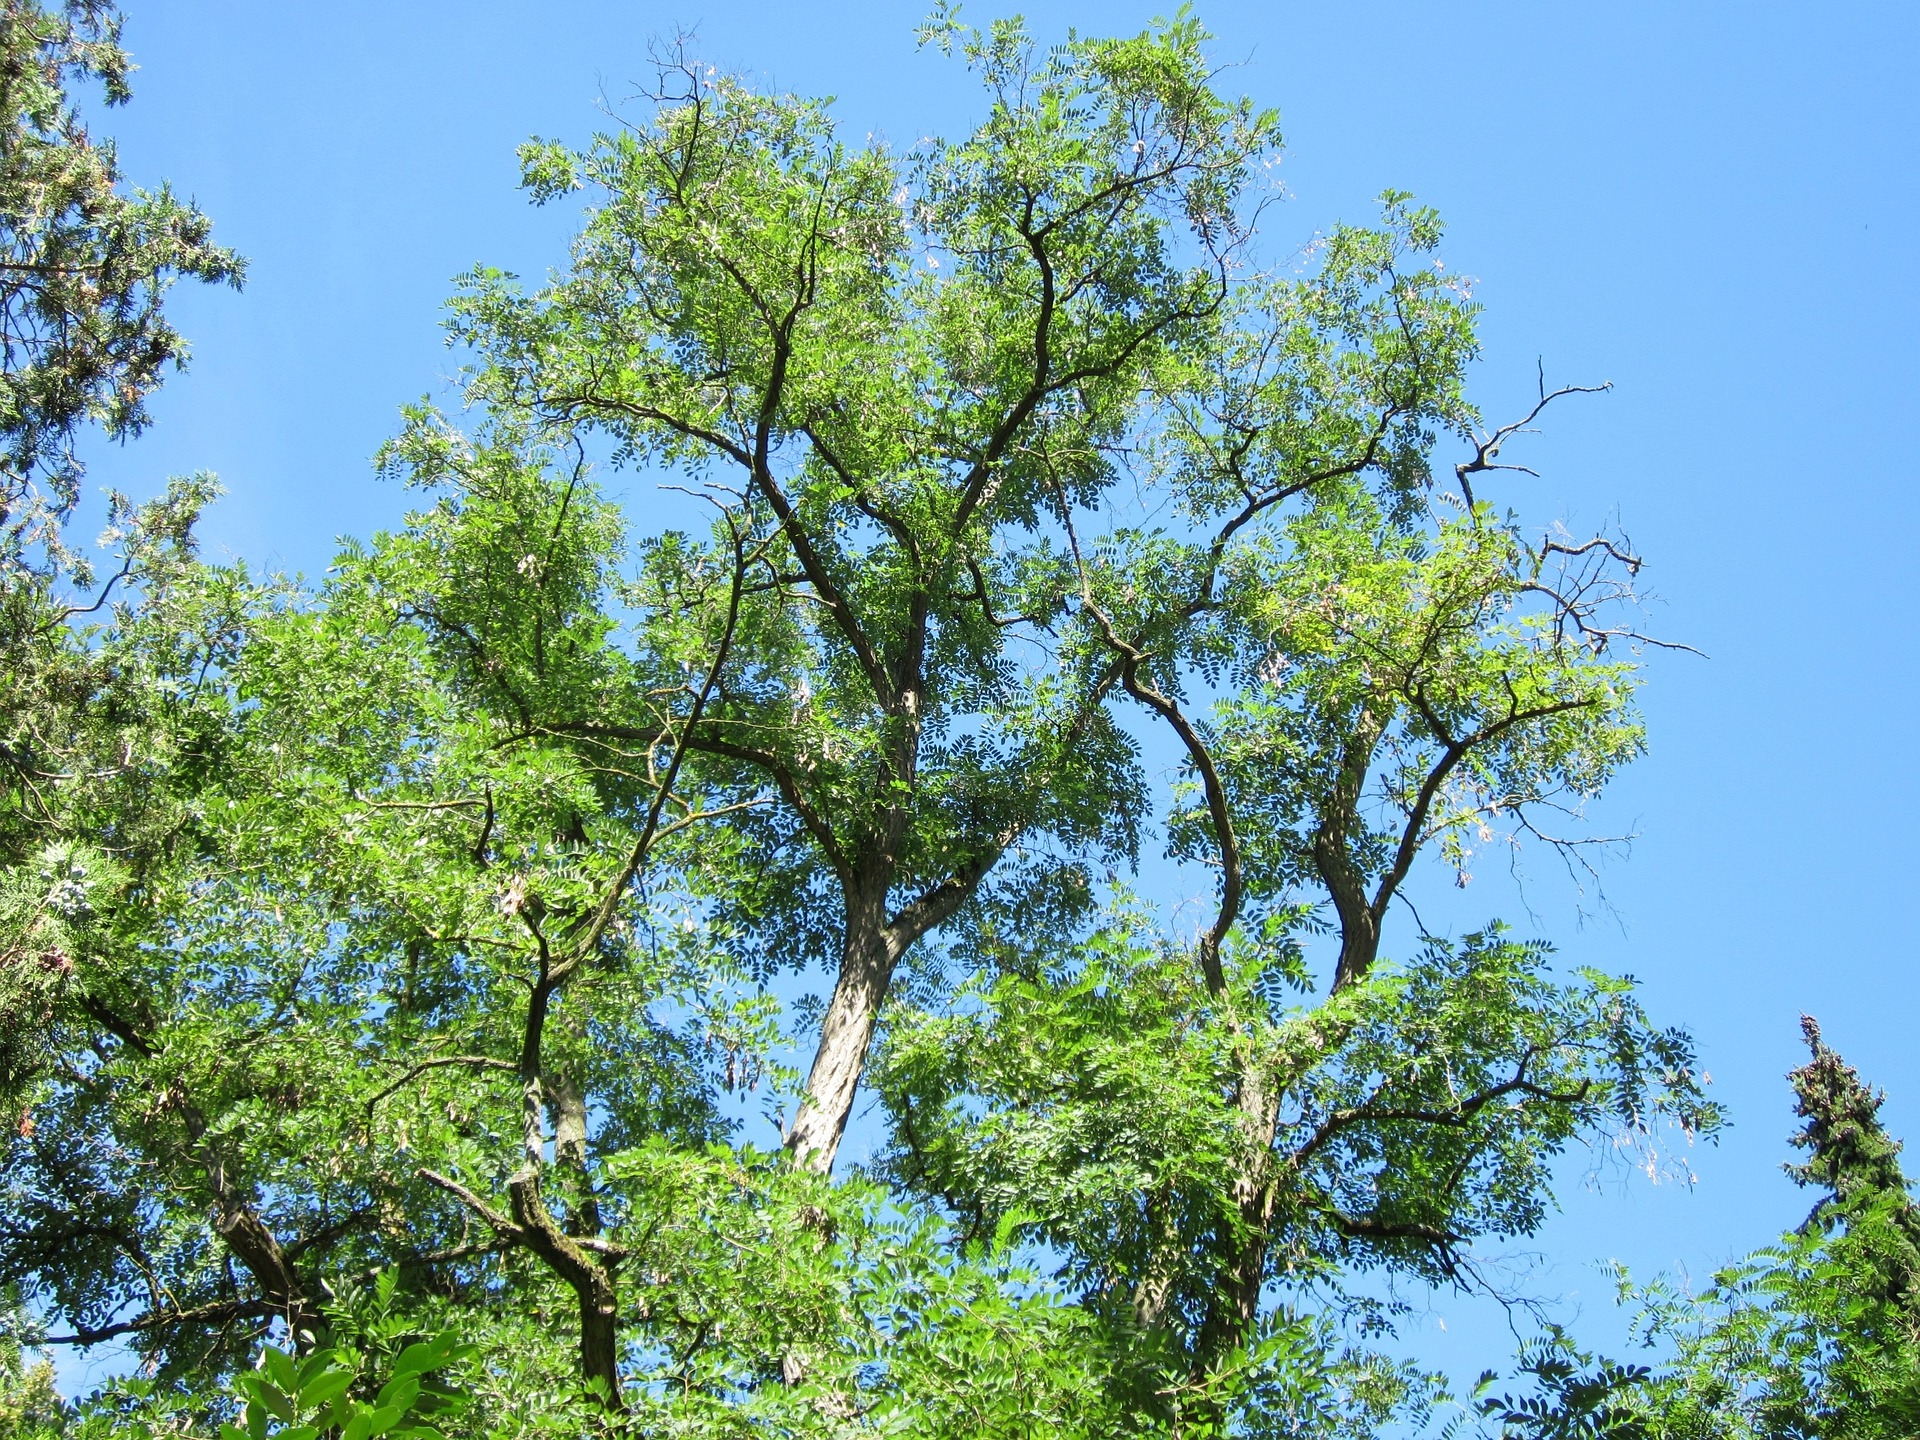 <h1>Trnovník akát <i>(Robinia pseudoacacia)</i></h1><br />
Na modrém pozadí nebe vidíme kmen a olistěné větve vzrostlého akátu.